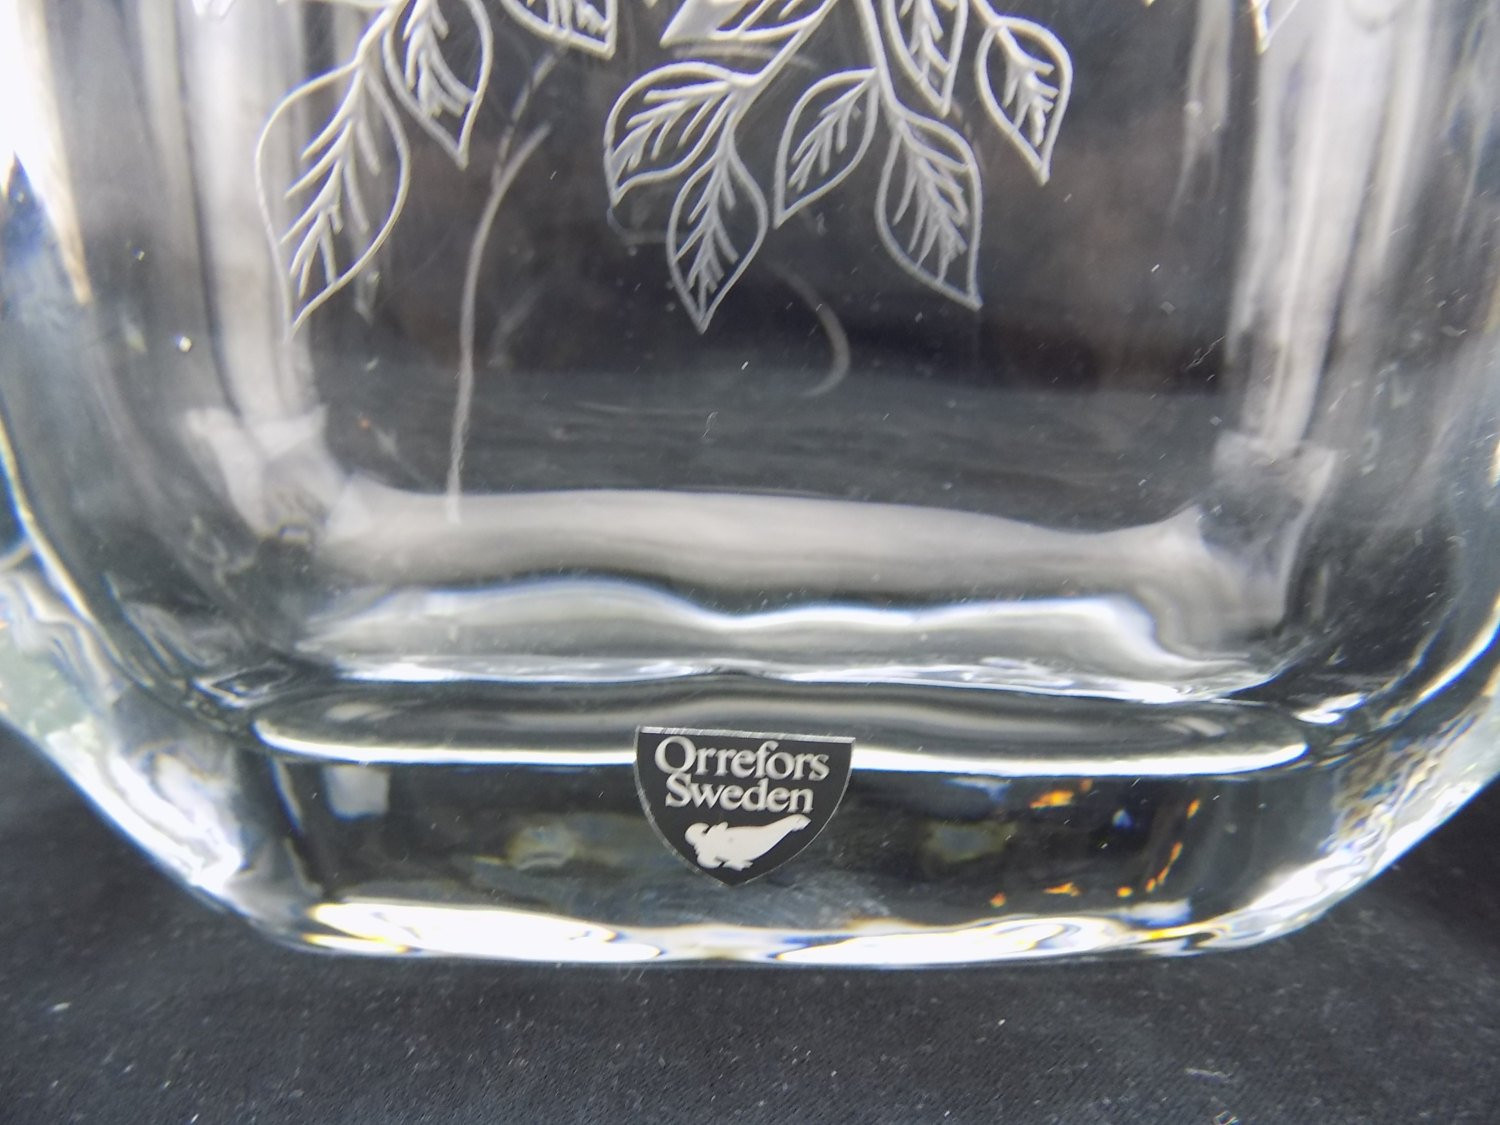 Vintage orrefors Crystal Vase Of orrefors Sweden Crystal Engraved Vase Loving Birds In Tree Etsy Throughout Image 2